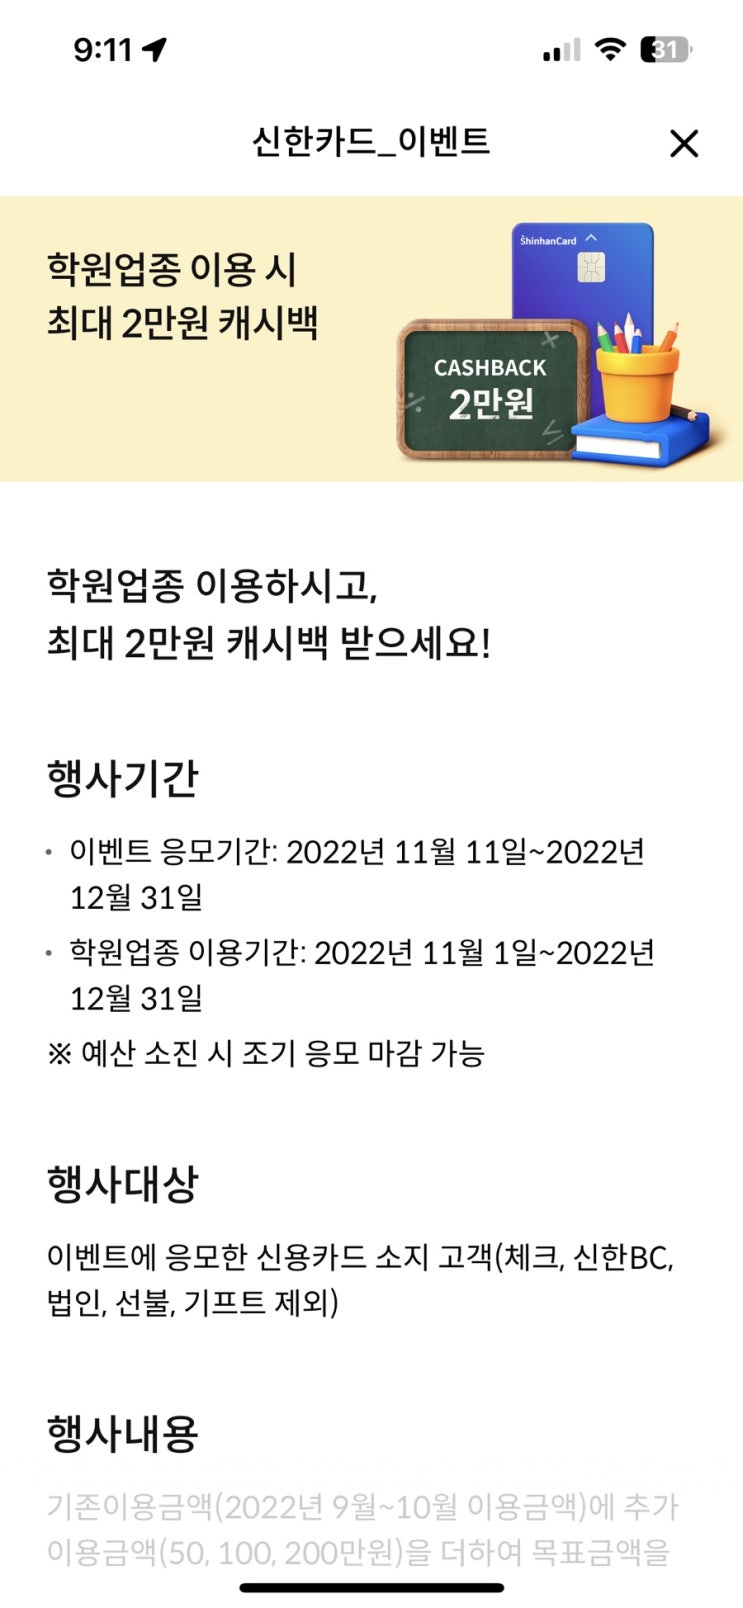 신한카드 신한플레이 학원비캐시백 이벤트